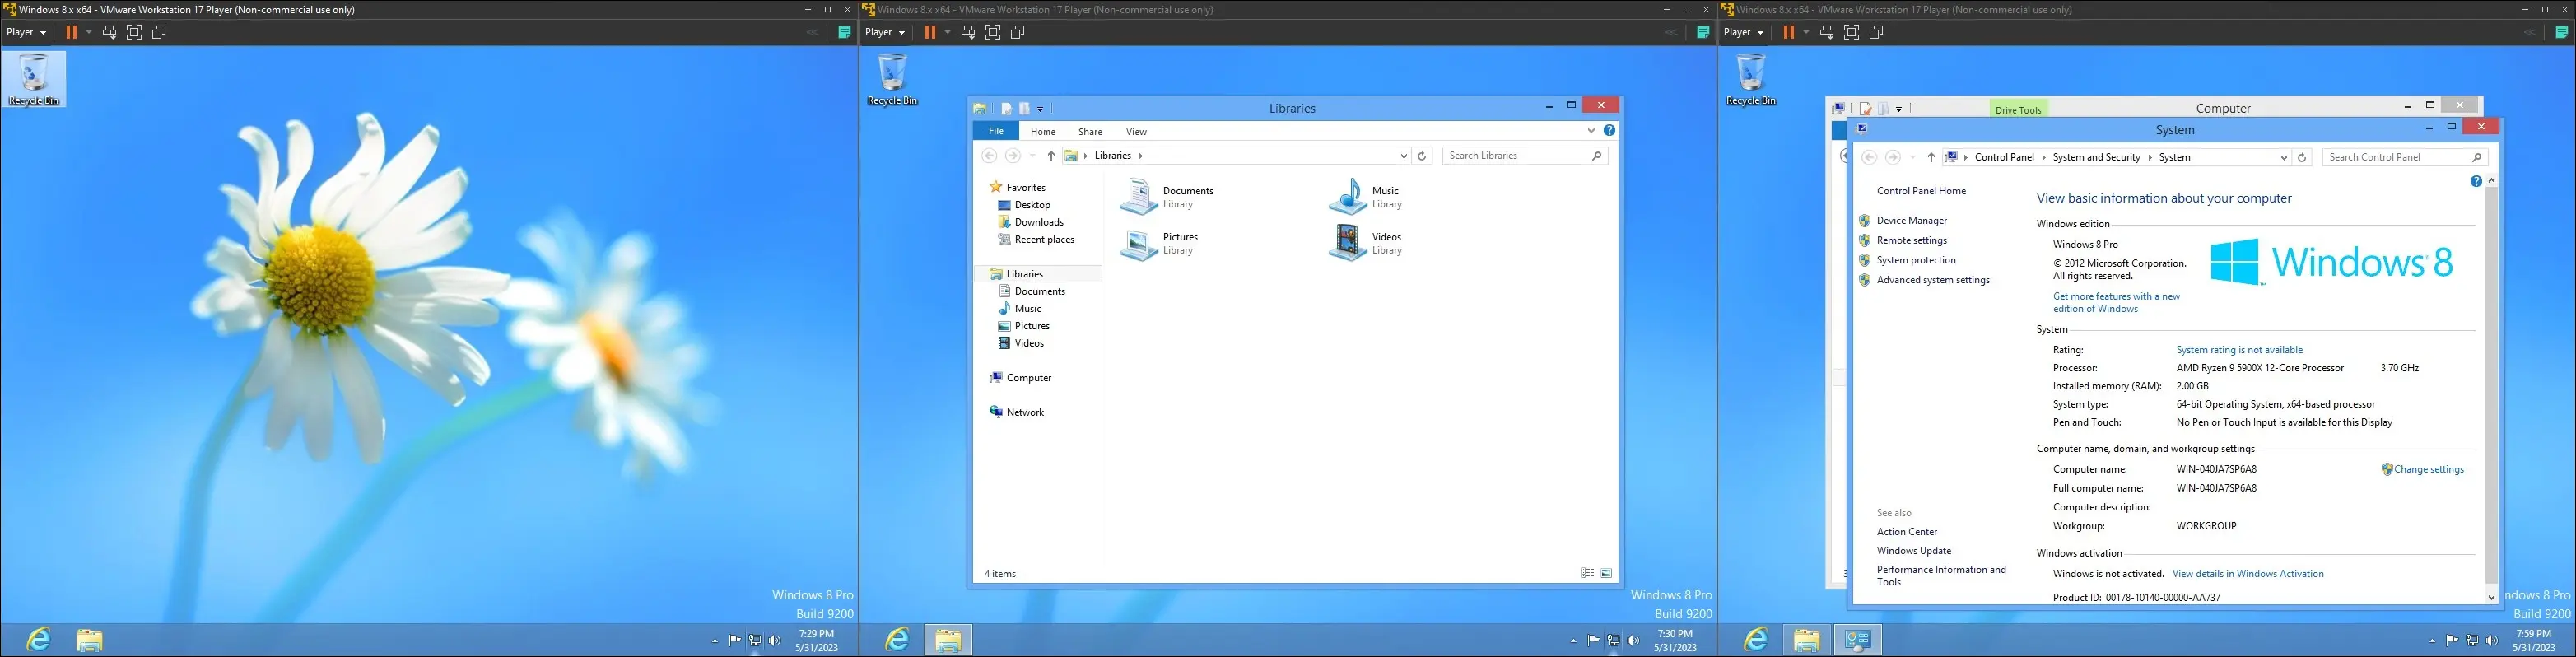 gambar Windows 8 pada mesin virtual, menampilkan desktop, antarmuka penjelajah, dan "Halaman tentang komputer"